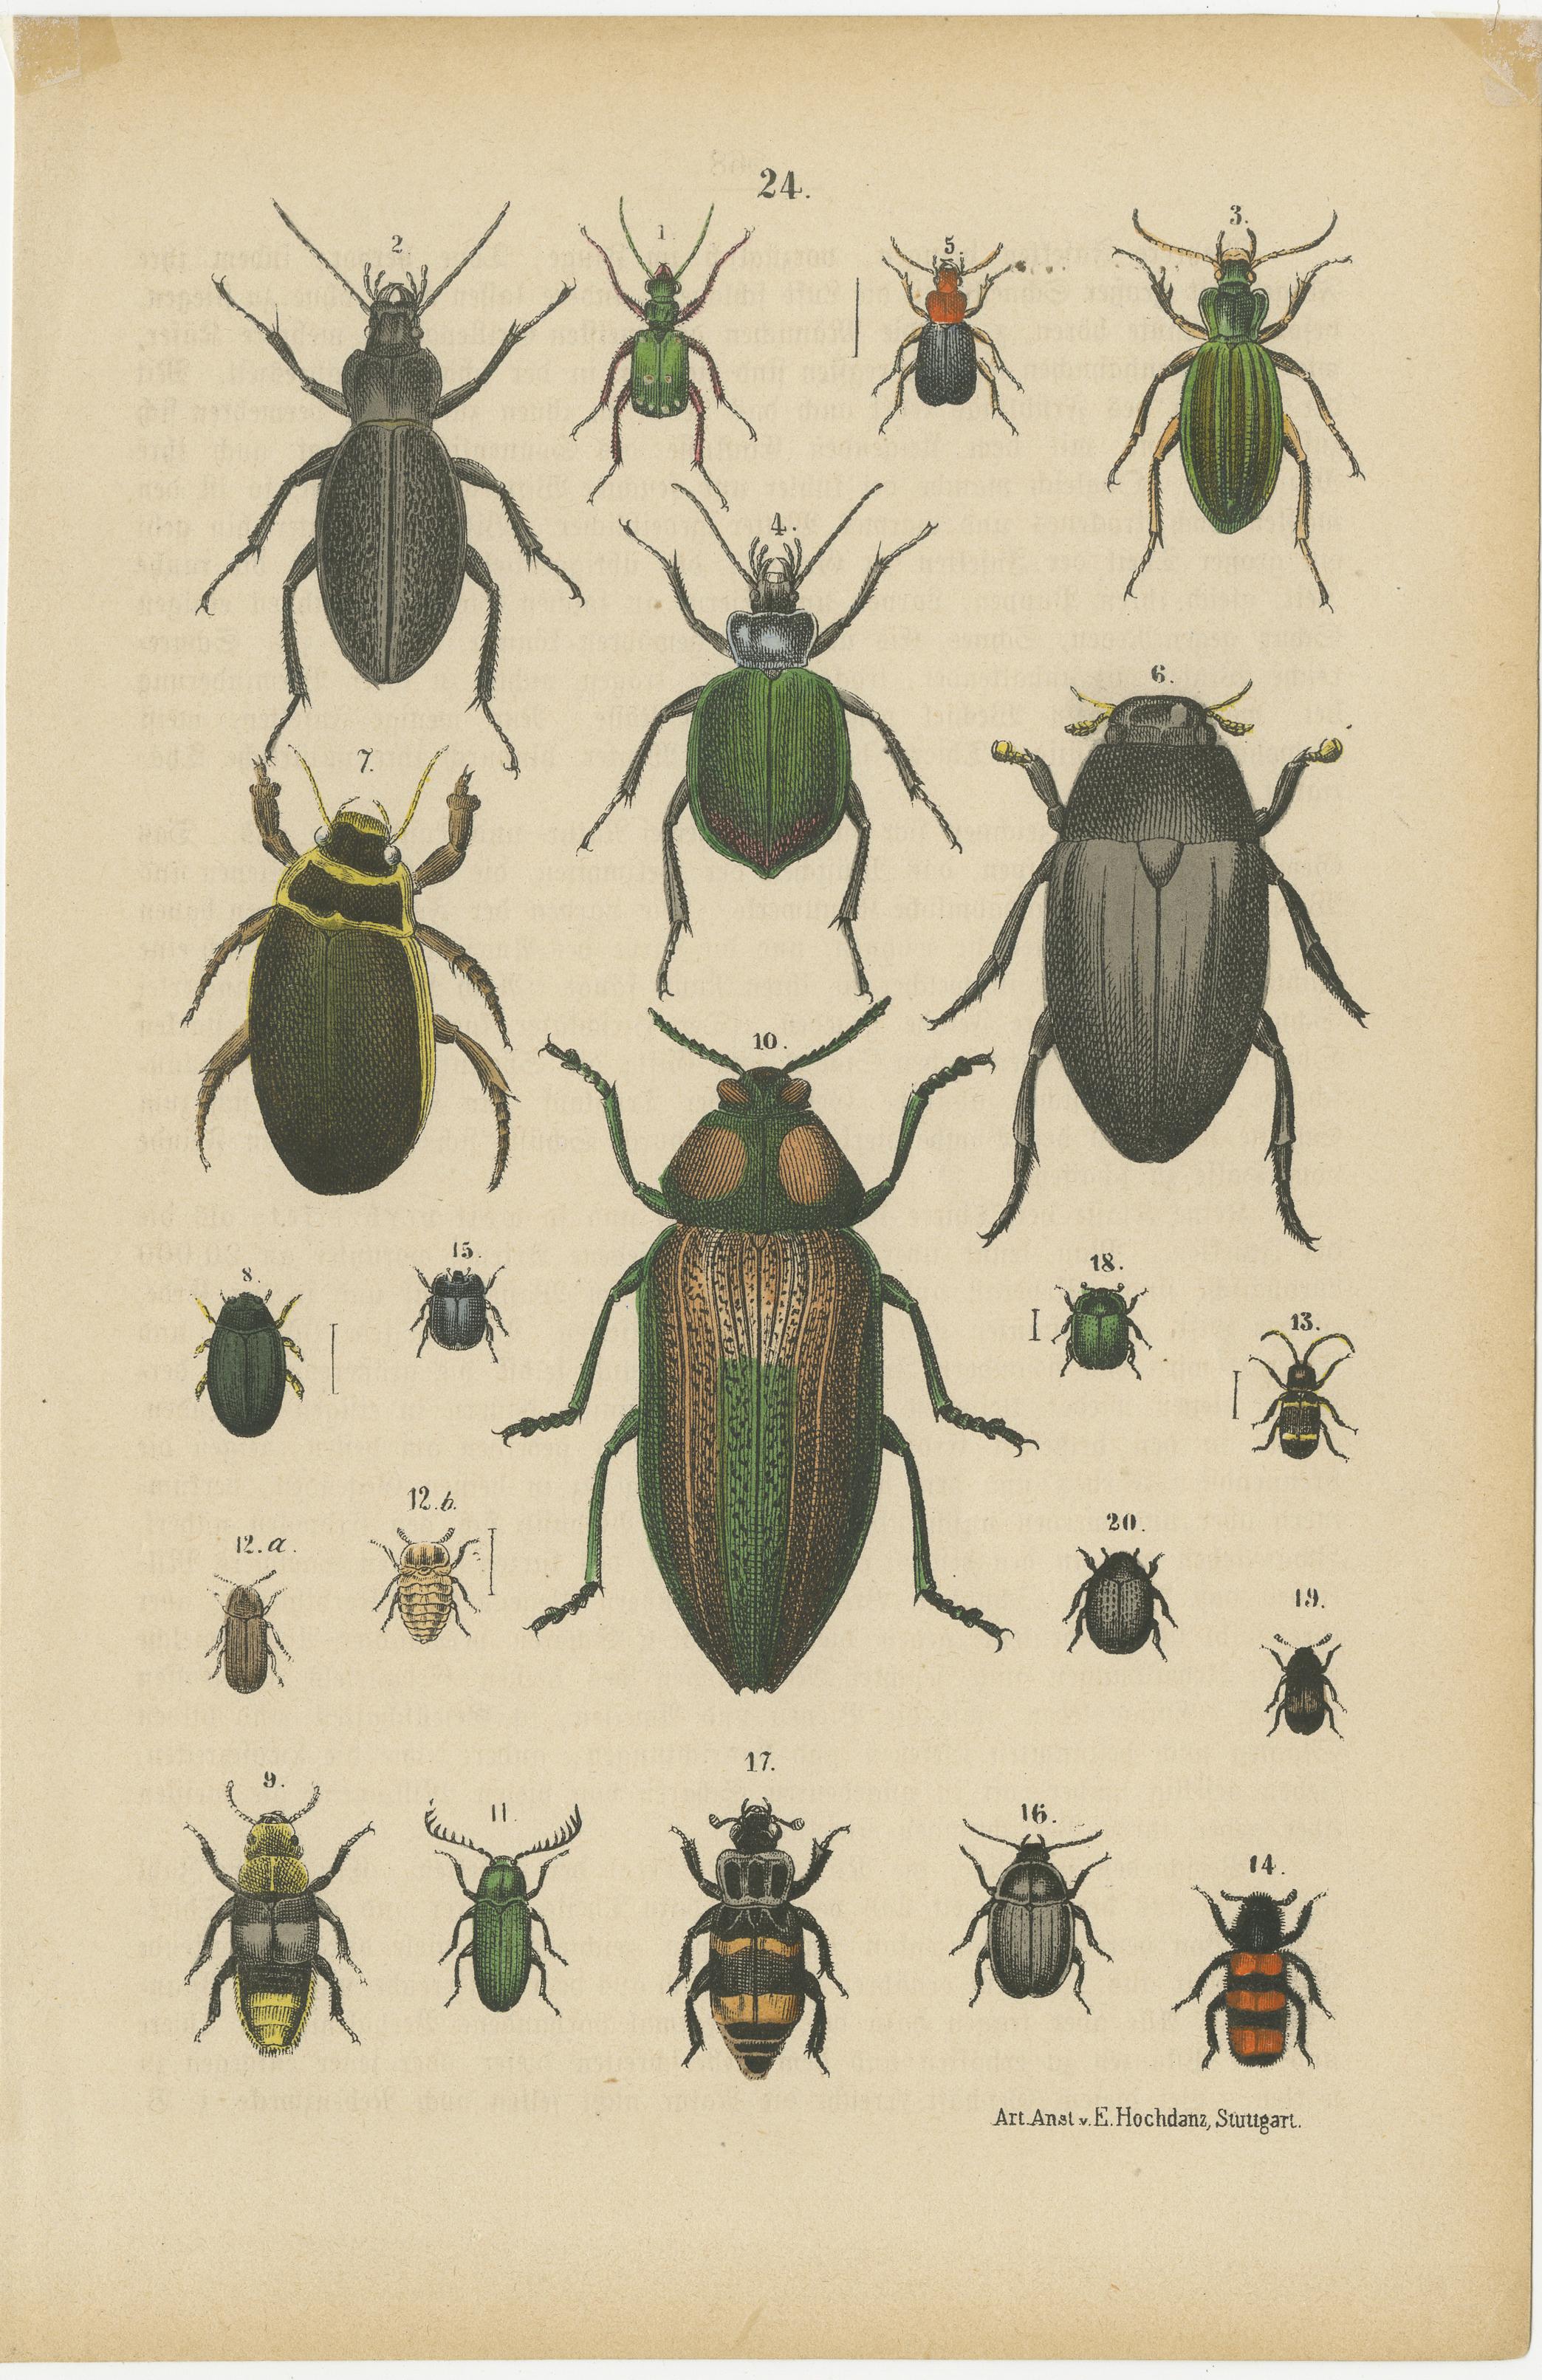 Satz von zwei handkolorierten antiken Drucken, die viele Käfer darstellen. Quelle unbekannt, muss noch ermittelt werden. Herausgegeben von E. Hochdanz, ca. 1890. Der Druck enthält einen Nashornkäfer. Nashornkäfer zeichnen sich durch ihre großen